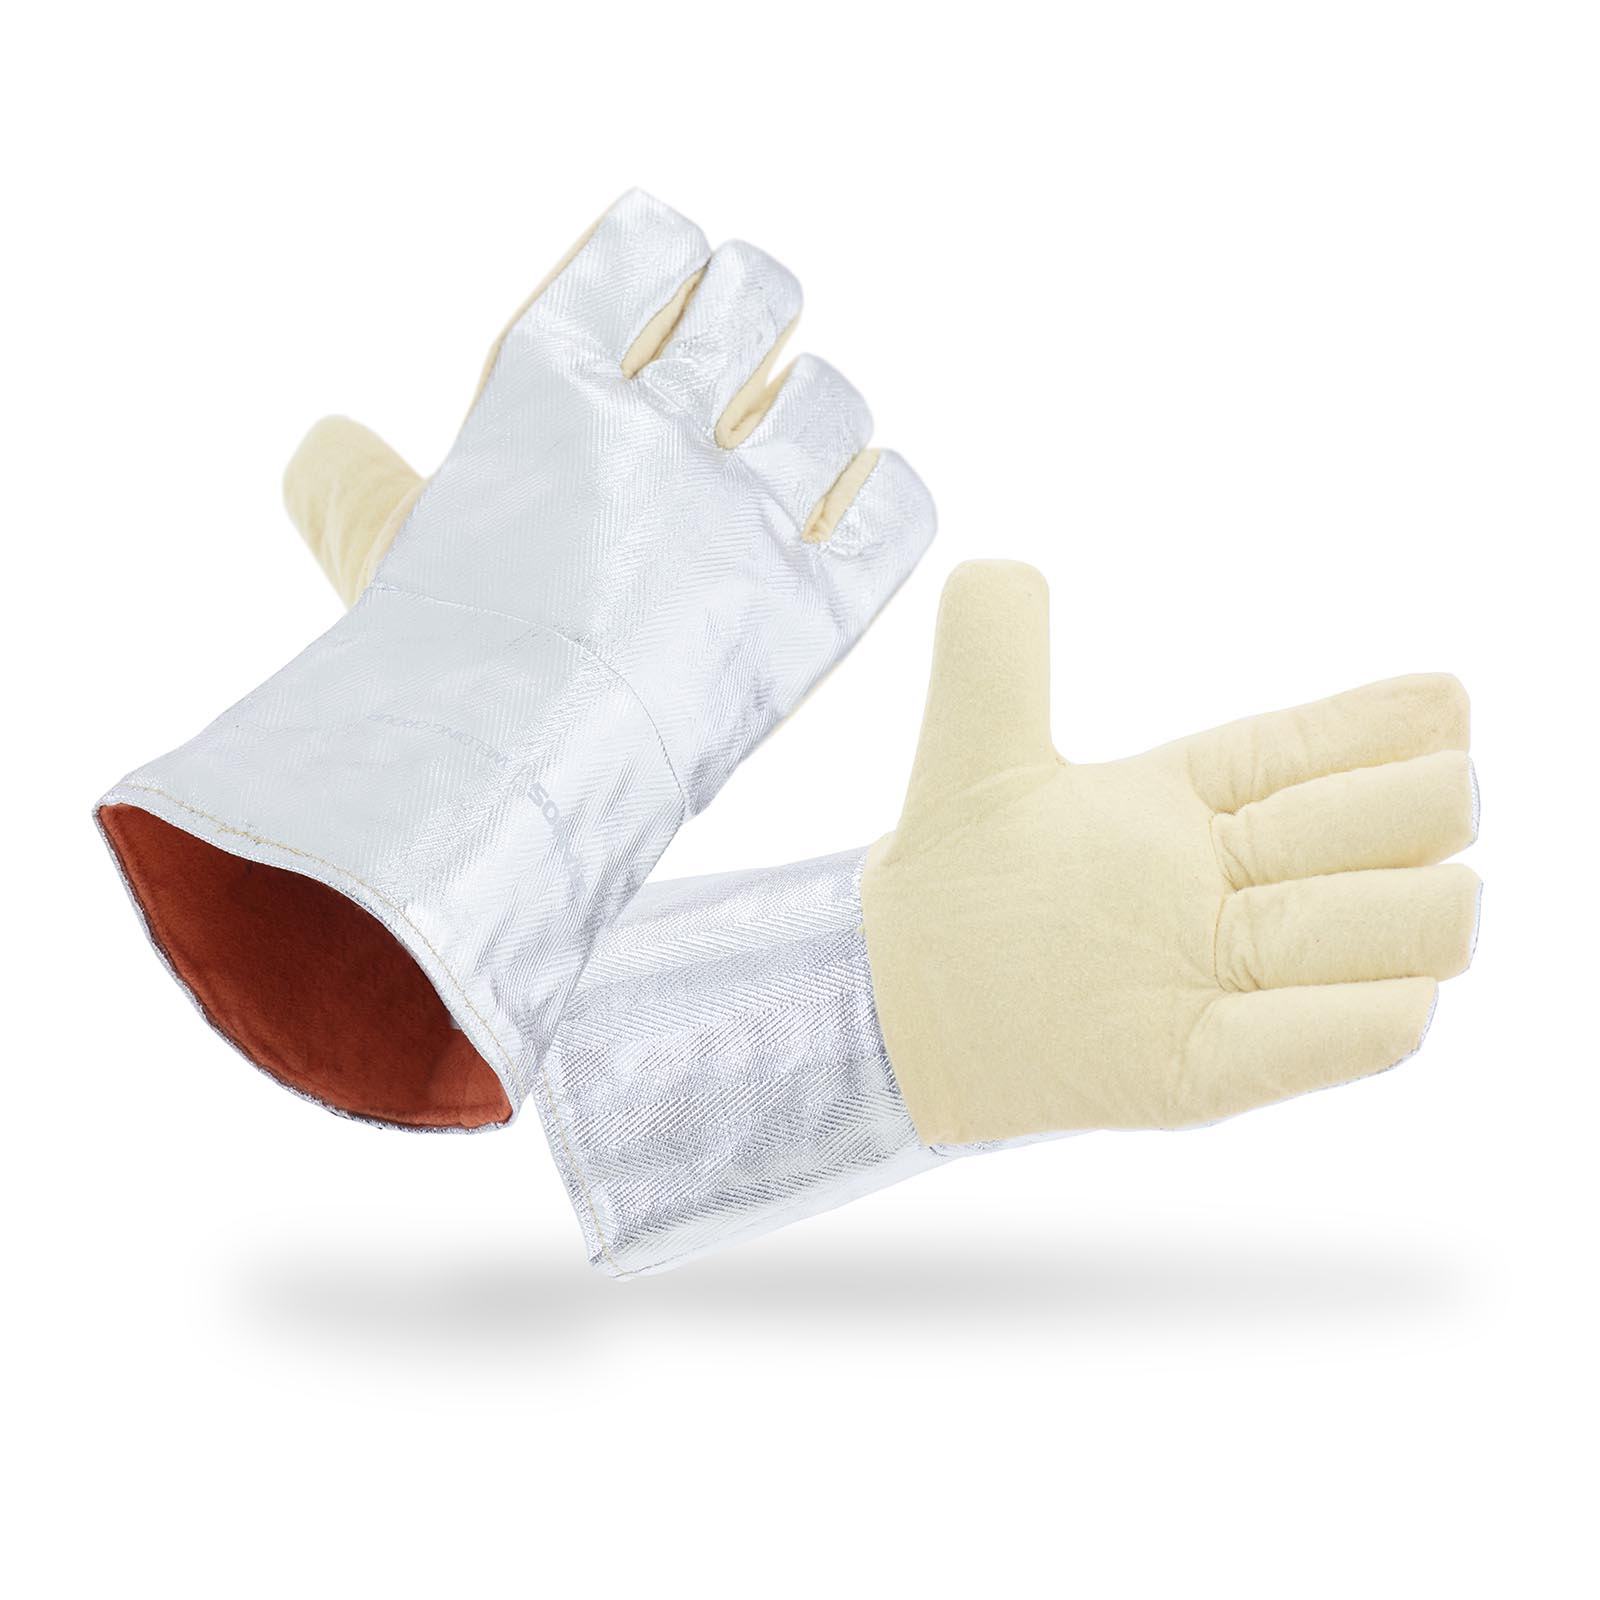 Zváračské rukavice - 35 x 20 cm - Aramidové vlákno - dĺžka 35 cm